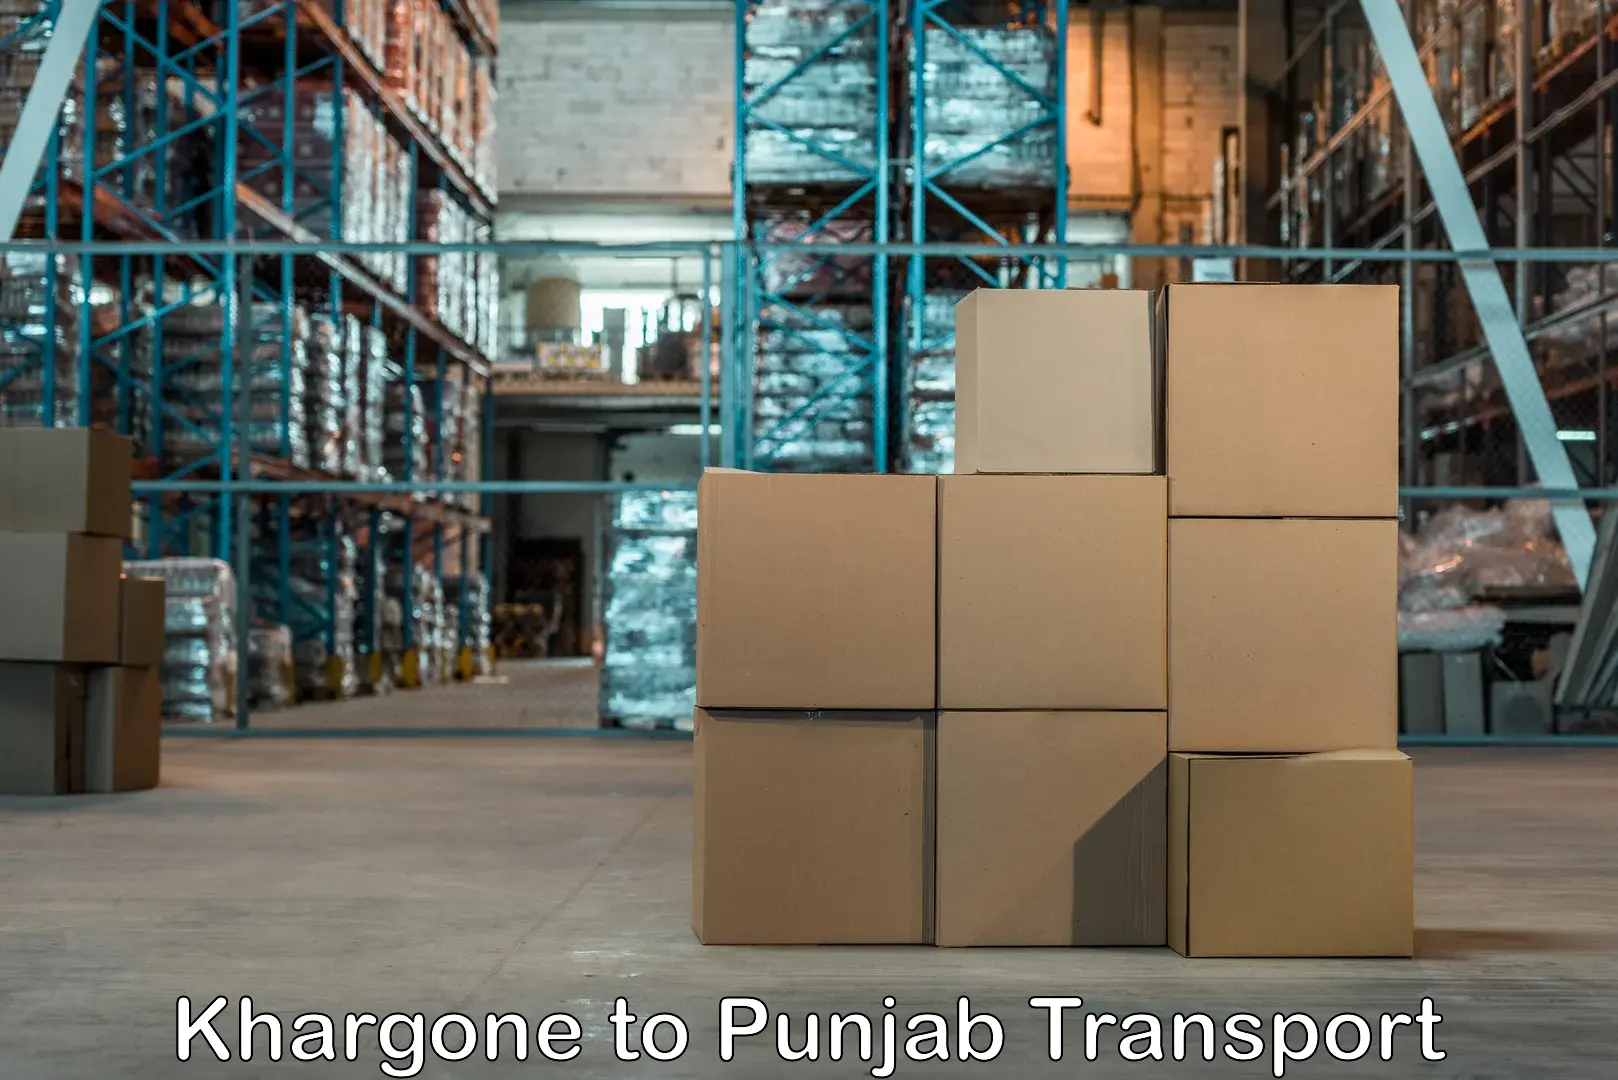 Truck transport companies in India Khargone to Nawanshahr